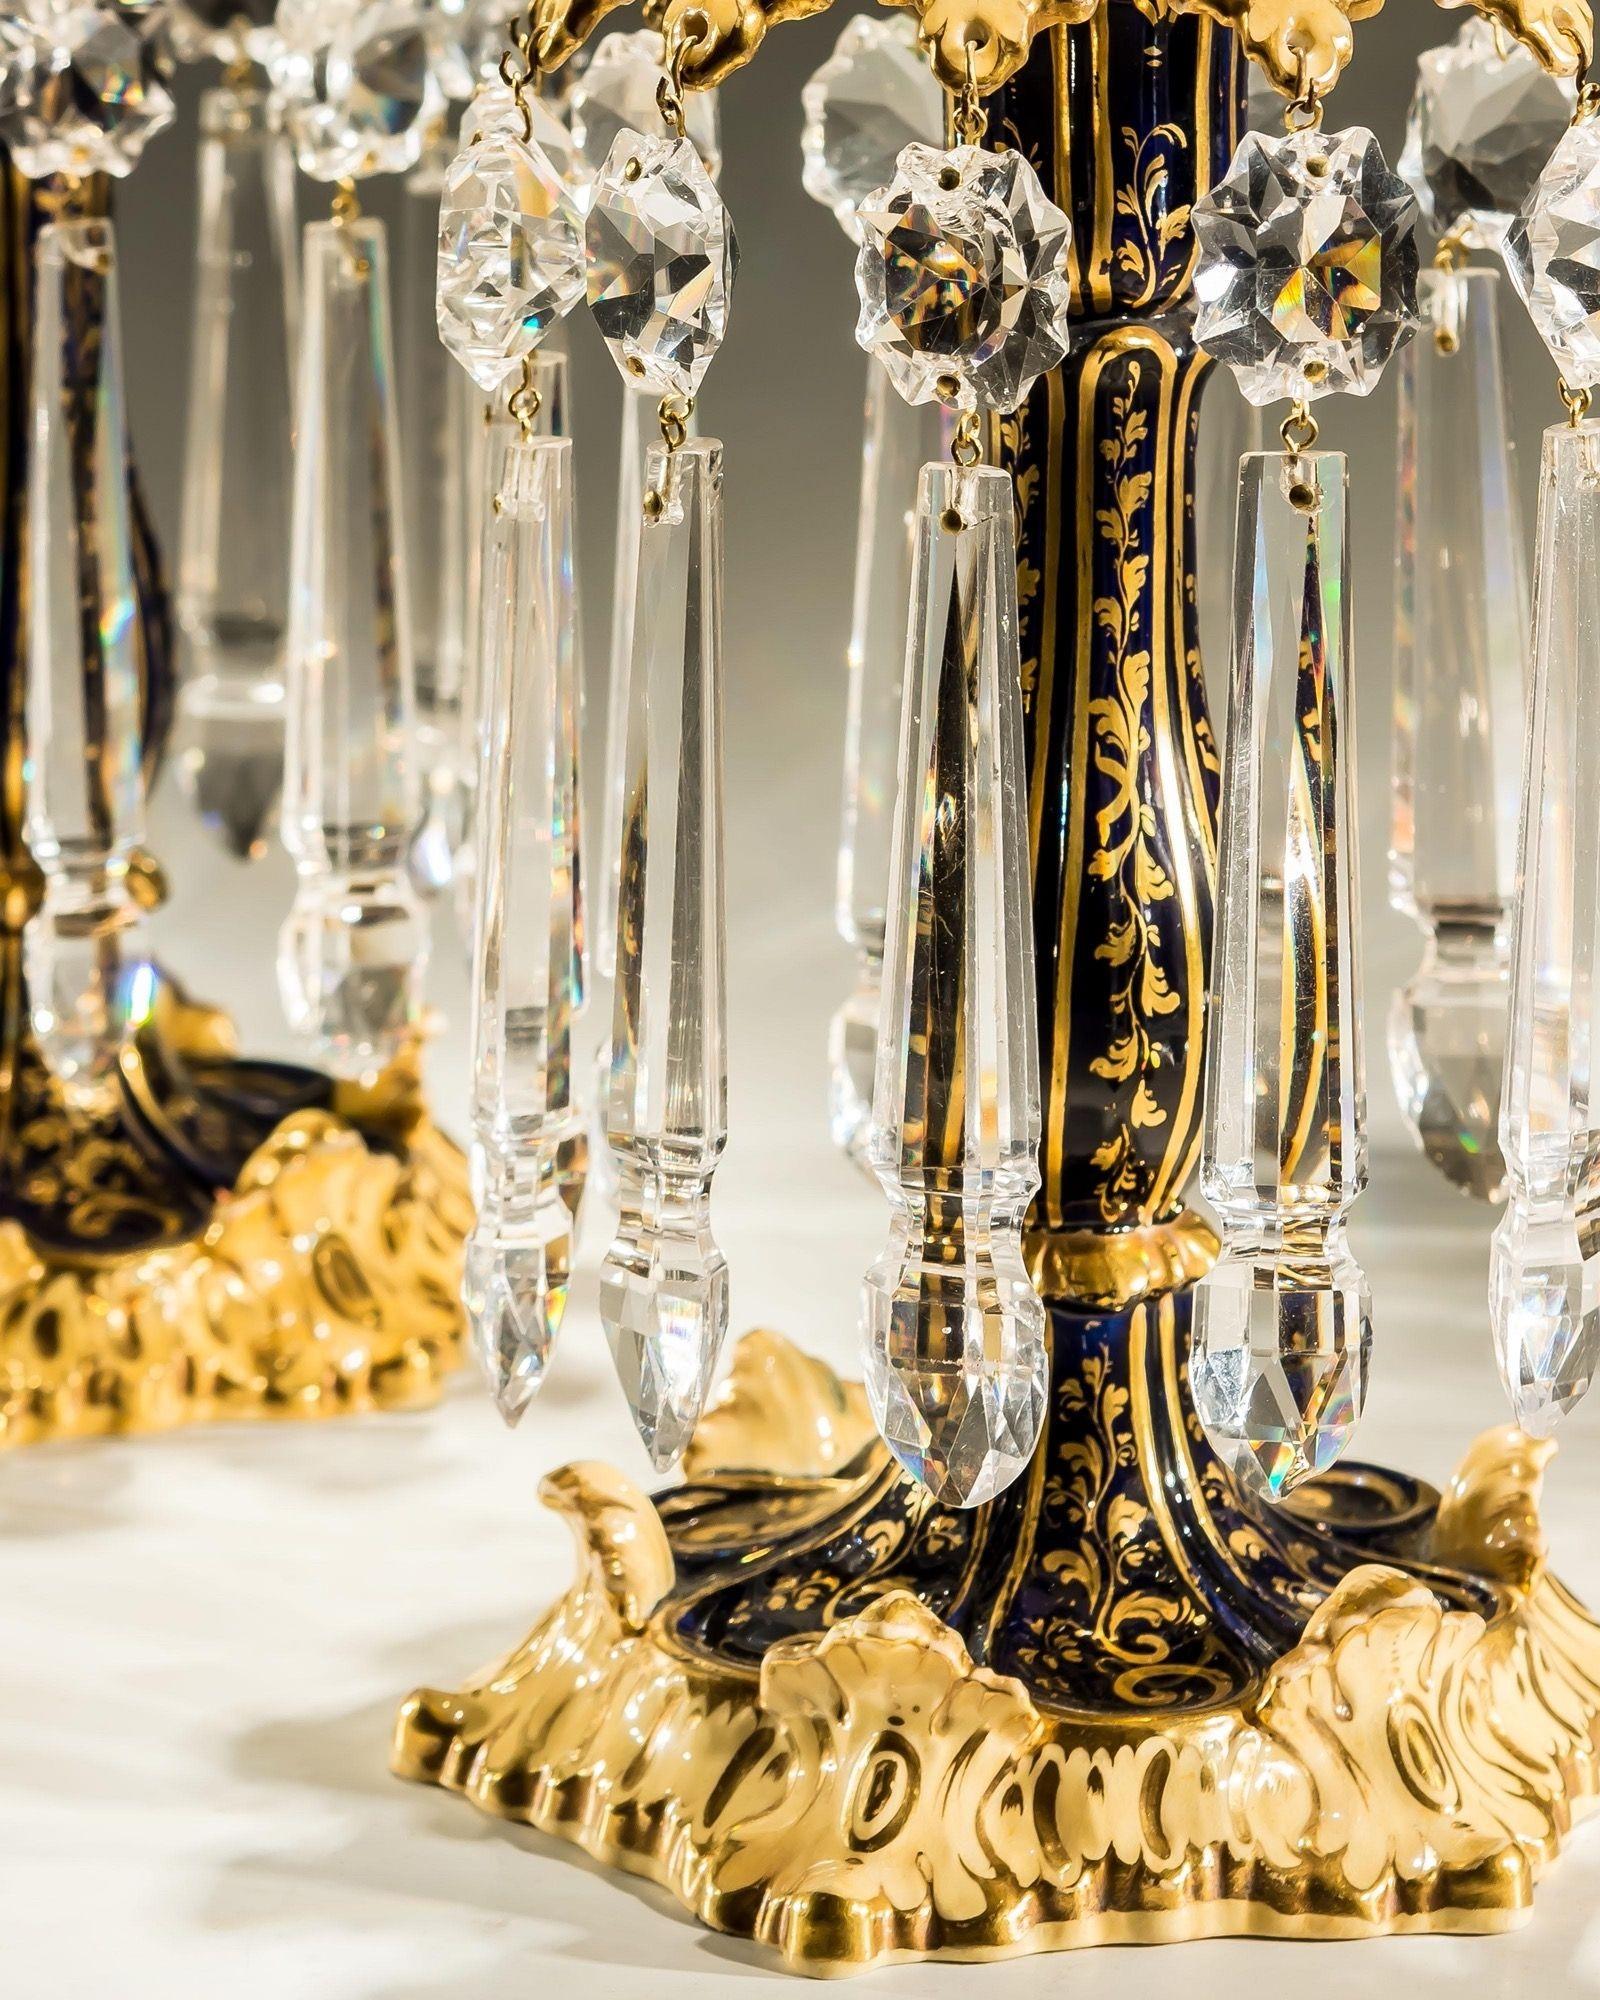 Exceptionnelle paire de chandeliers en porcelaine bleu royal de Rockingham avec une fine décoration dorée, suspendus avec des piques très inhabituelles et des paillettes taillées en forme d'encoche.